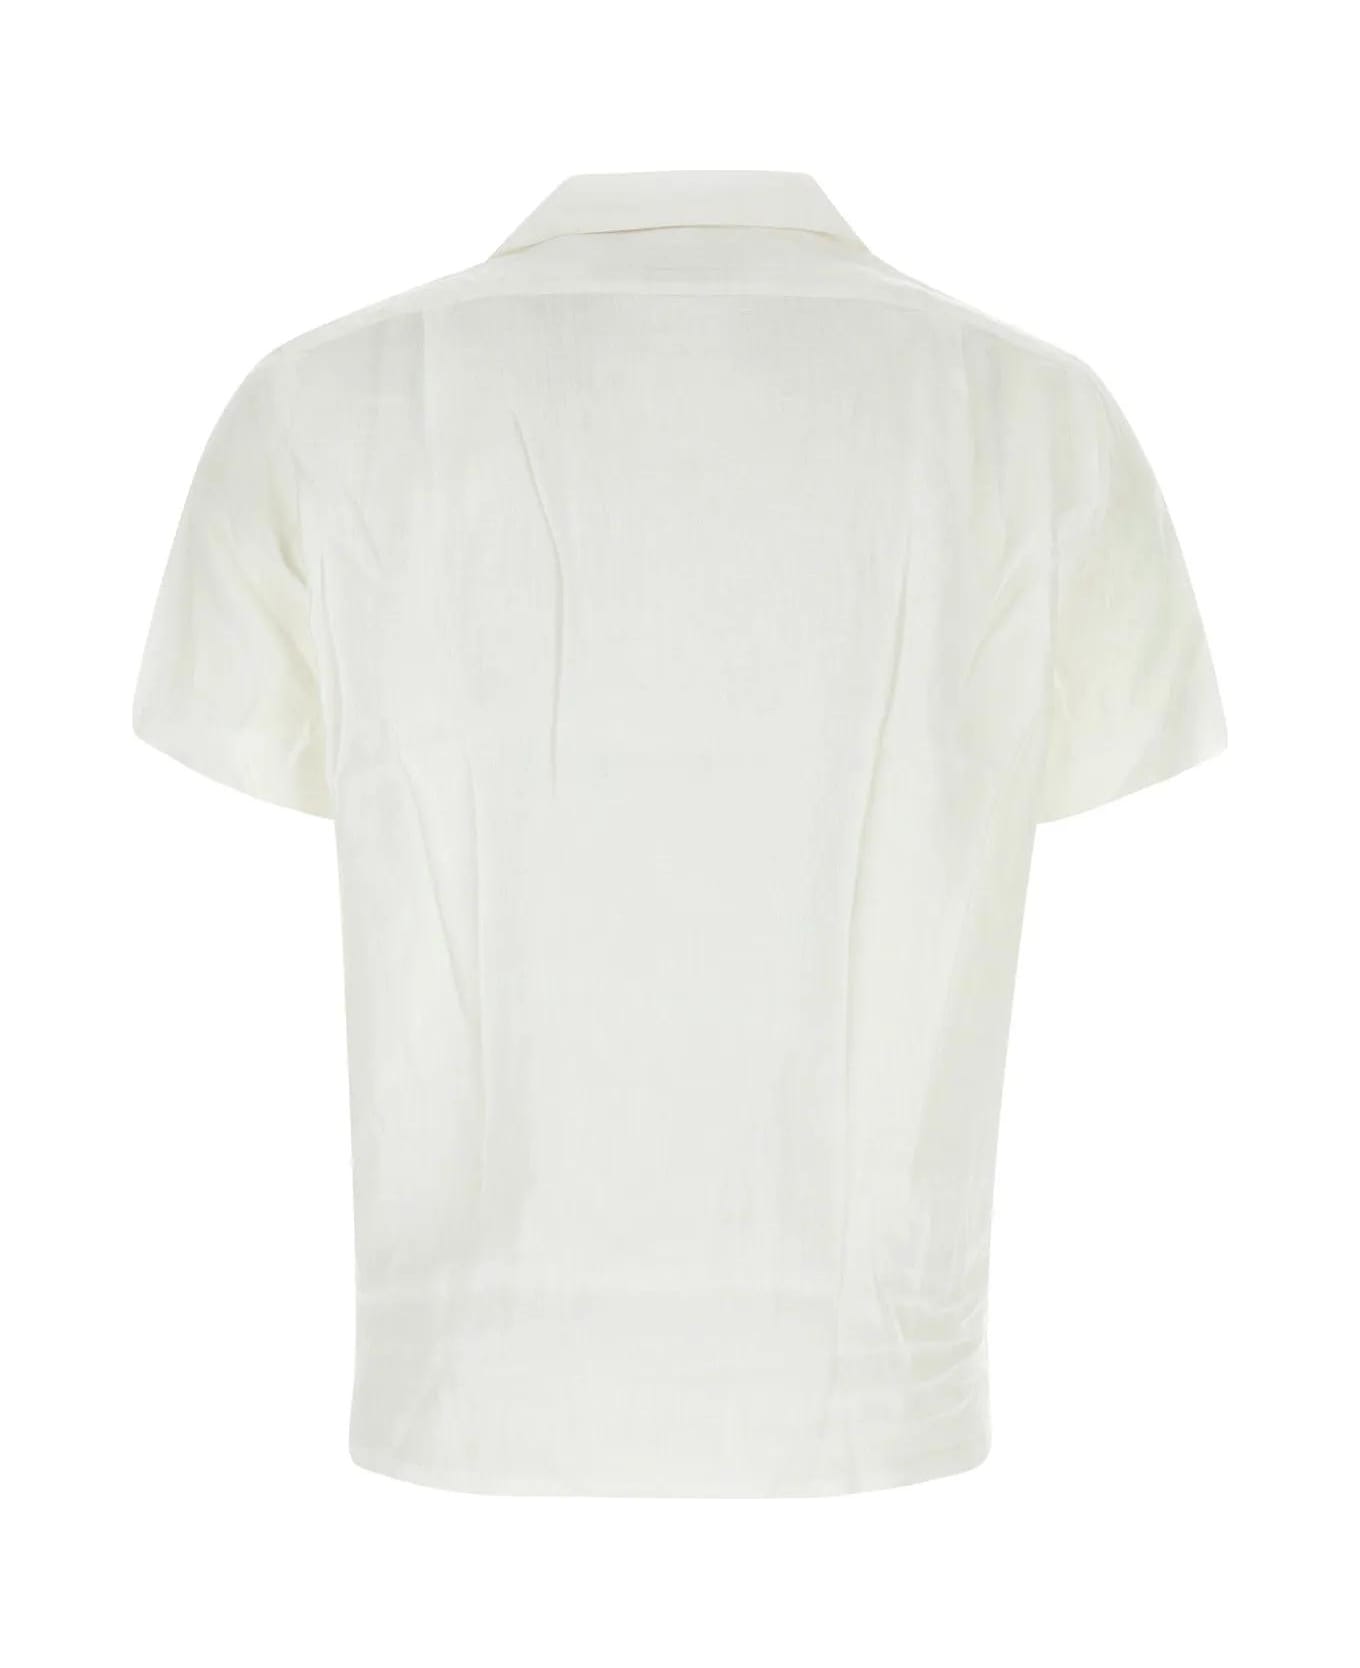 Ralph Lauren White Linen Shirt - 001 シャツ